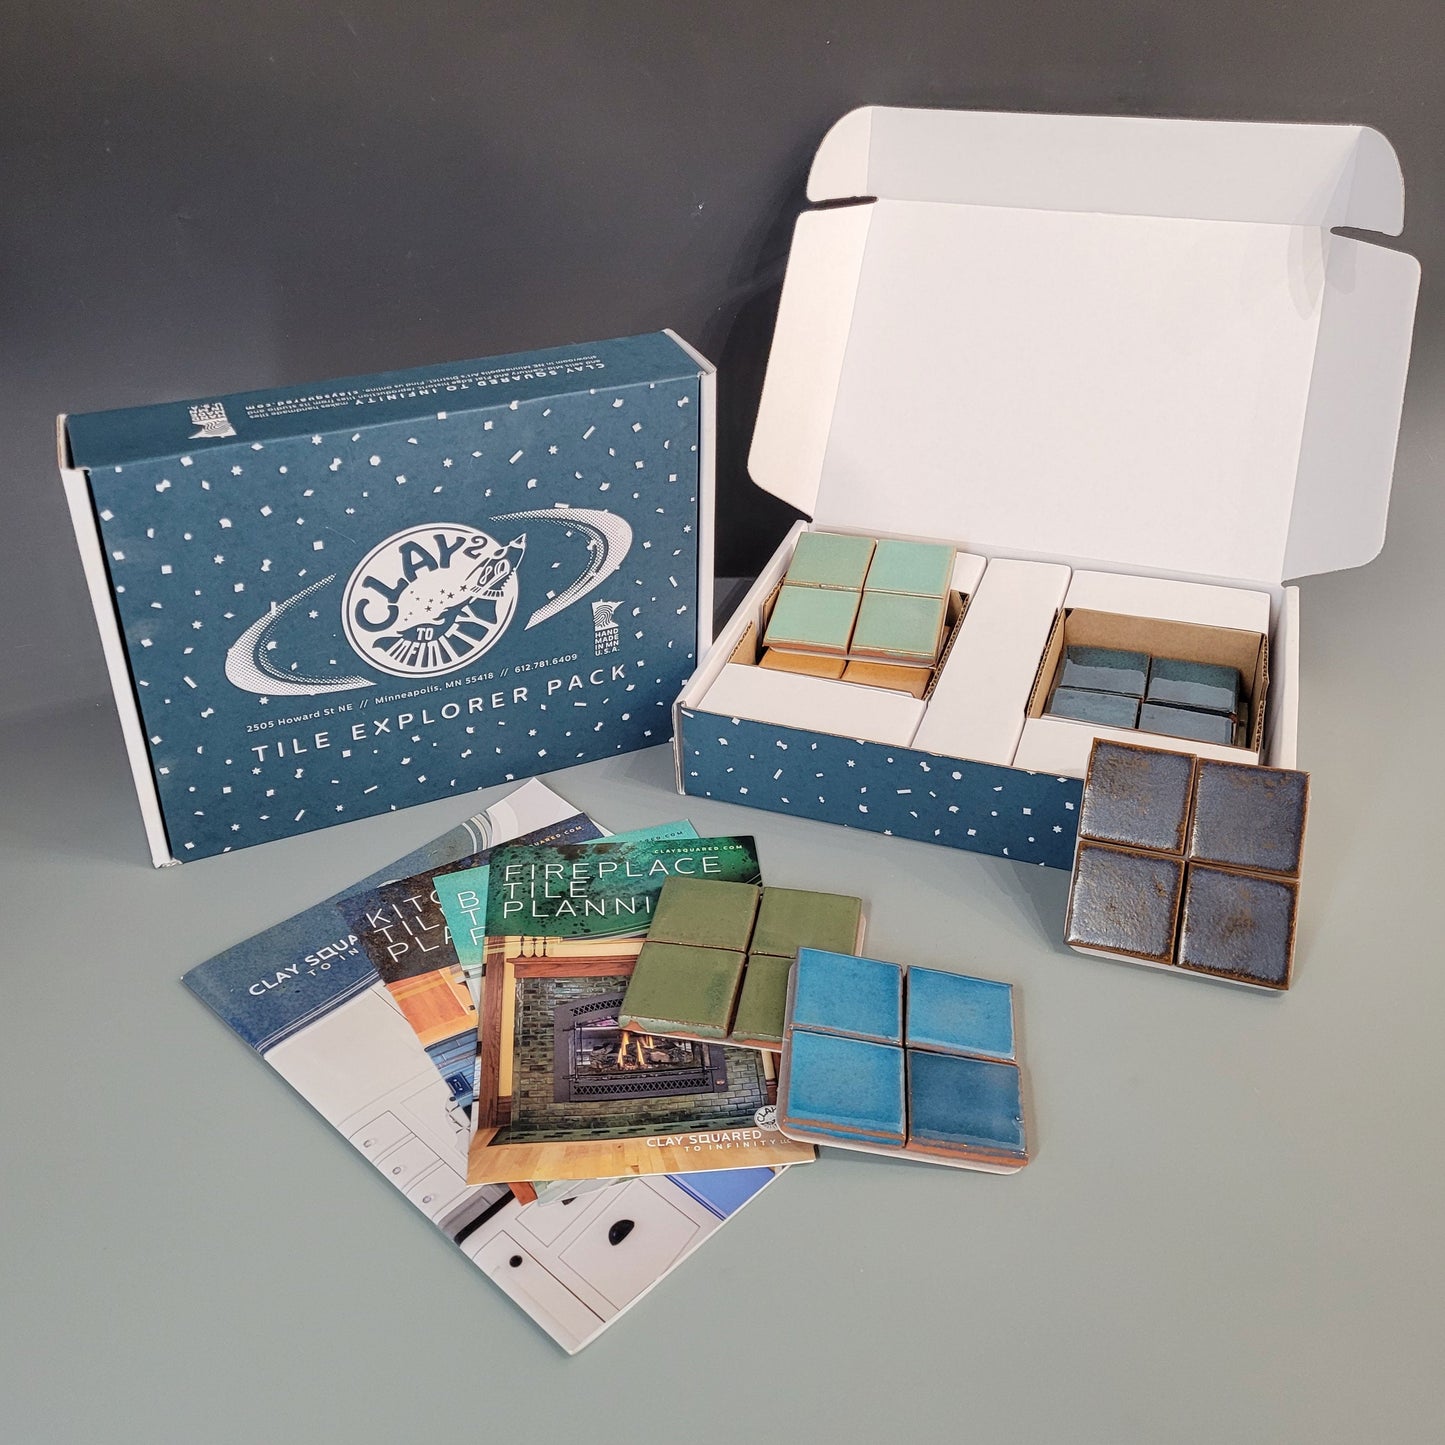 Handmade Tile Samples Pack